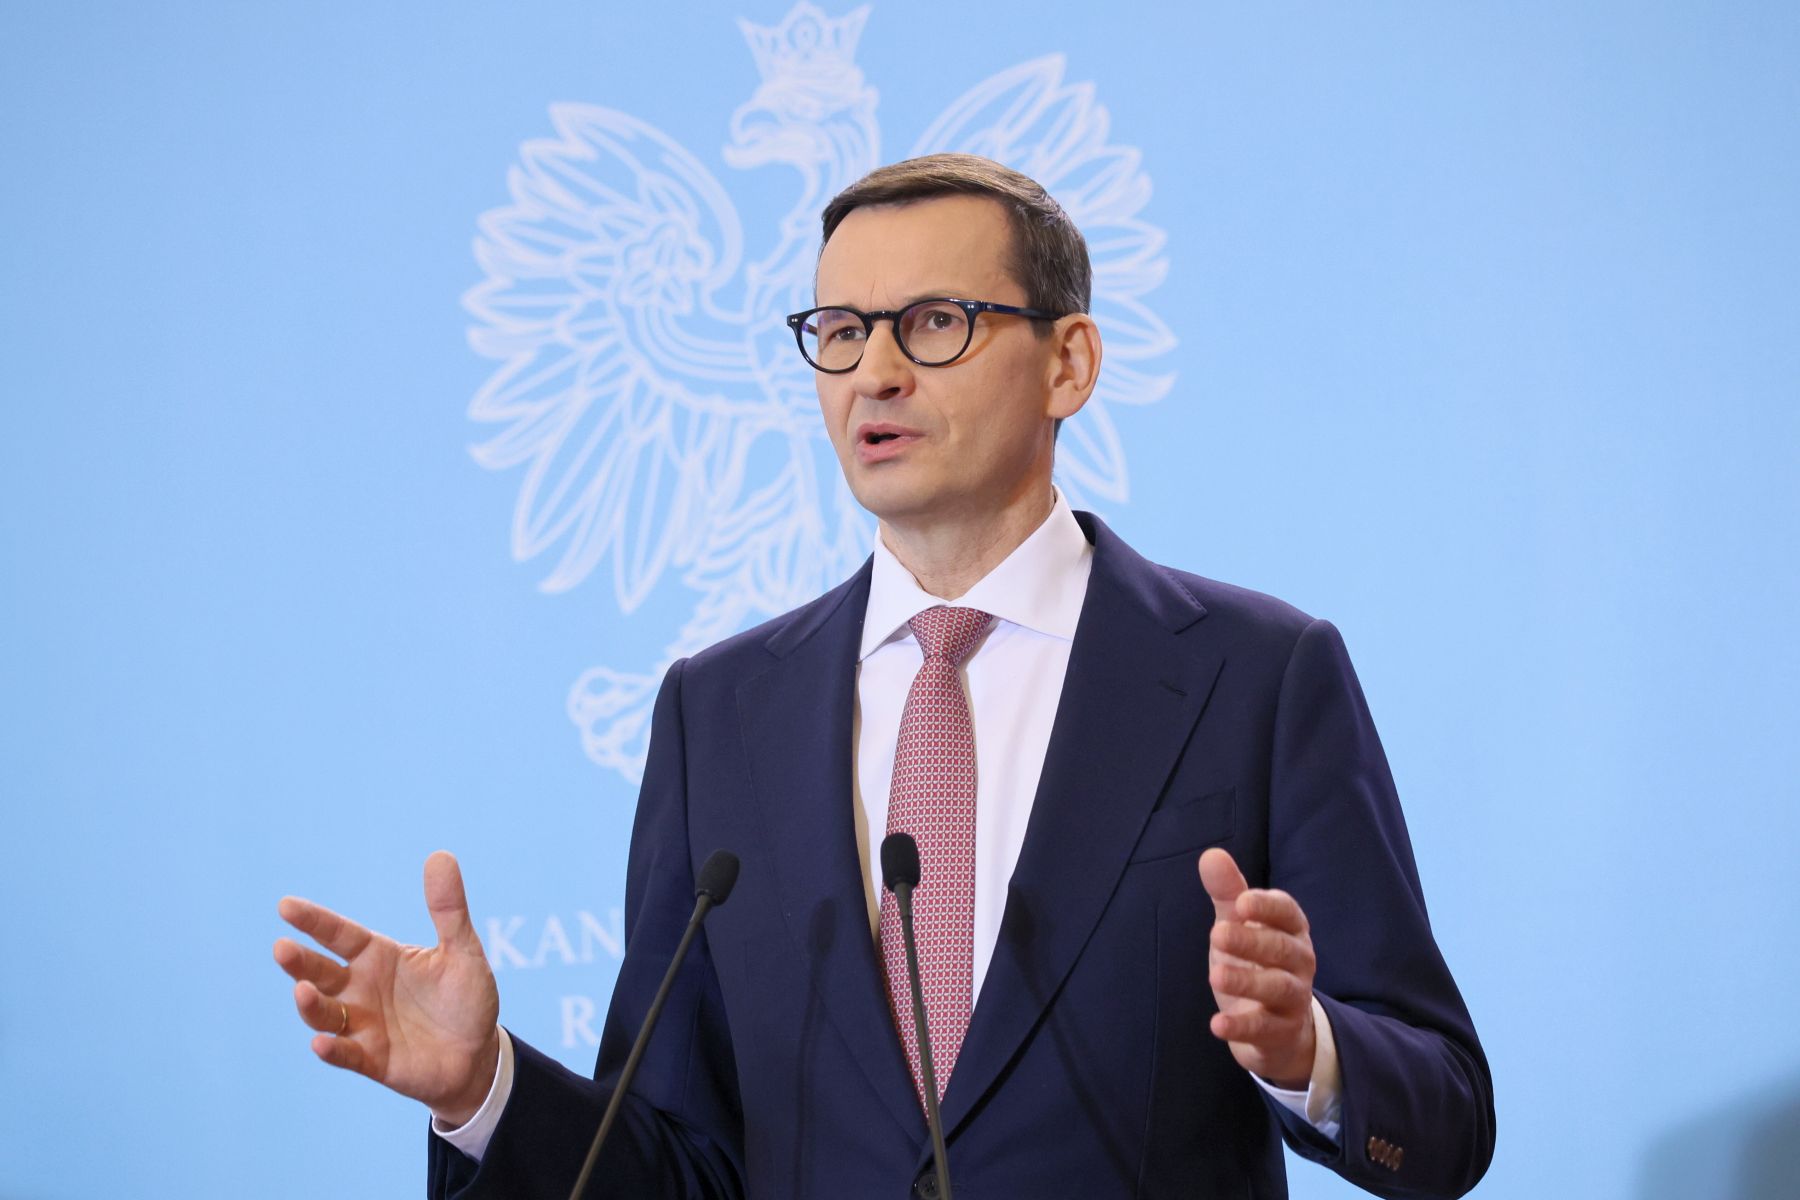 Beiktatták az új lengyel kormányt, ami többség híján bukásra van ítélve